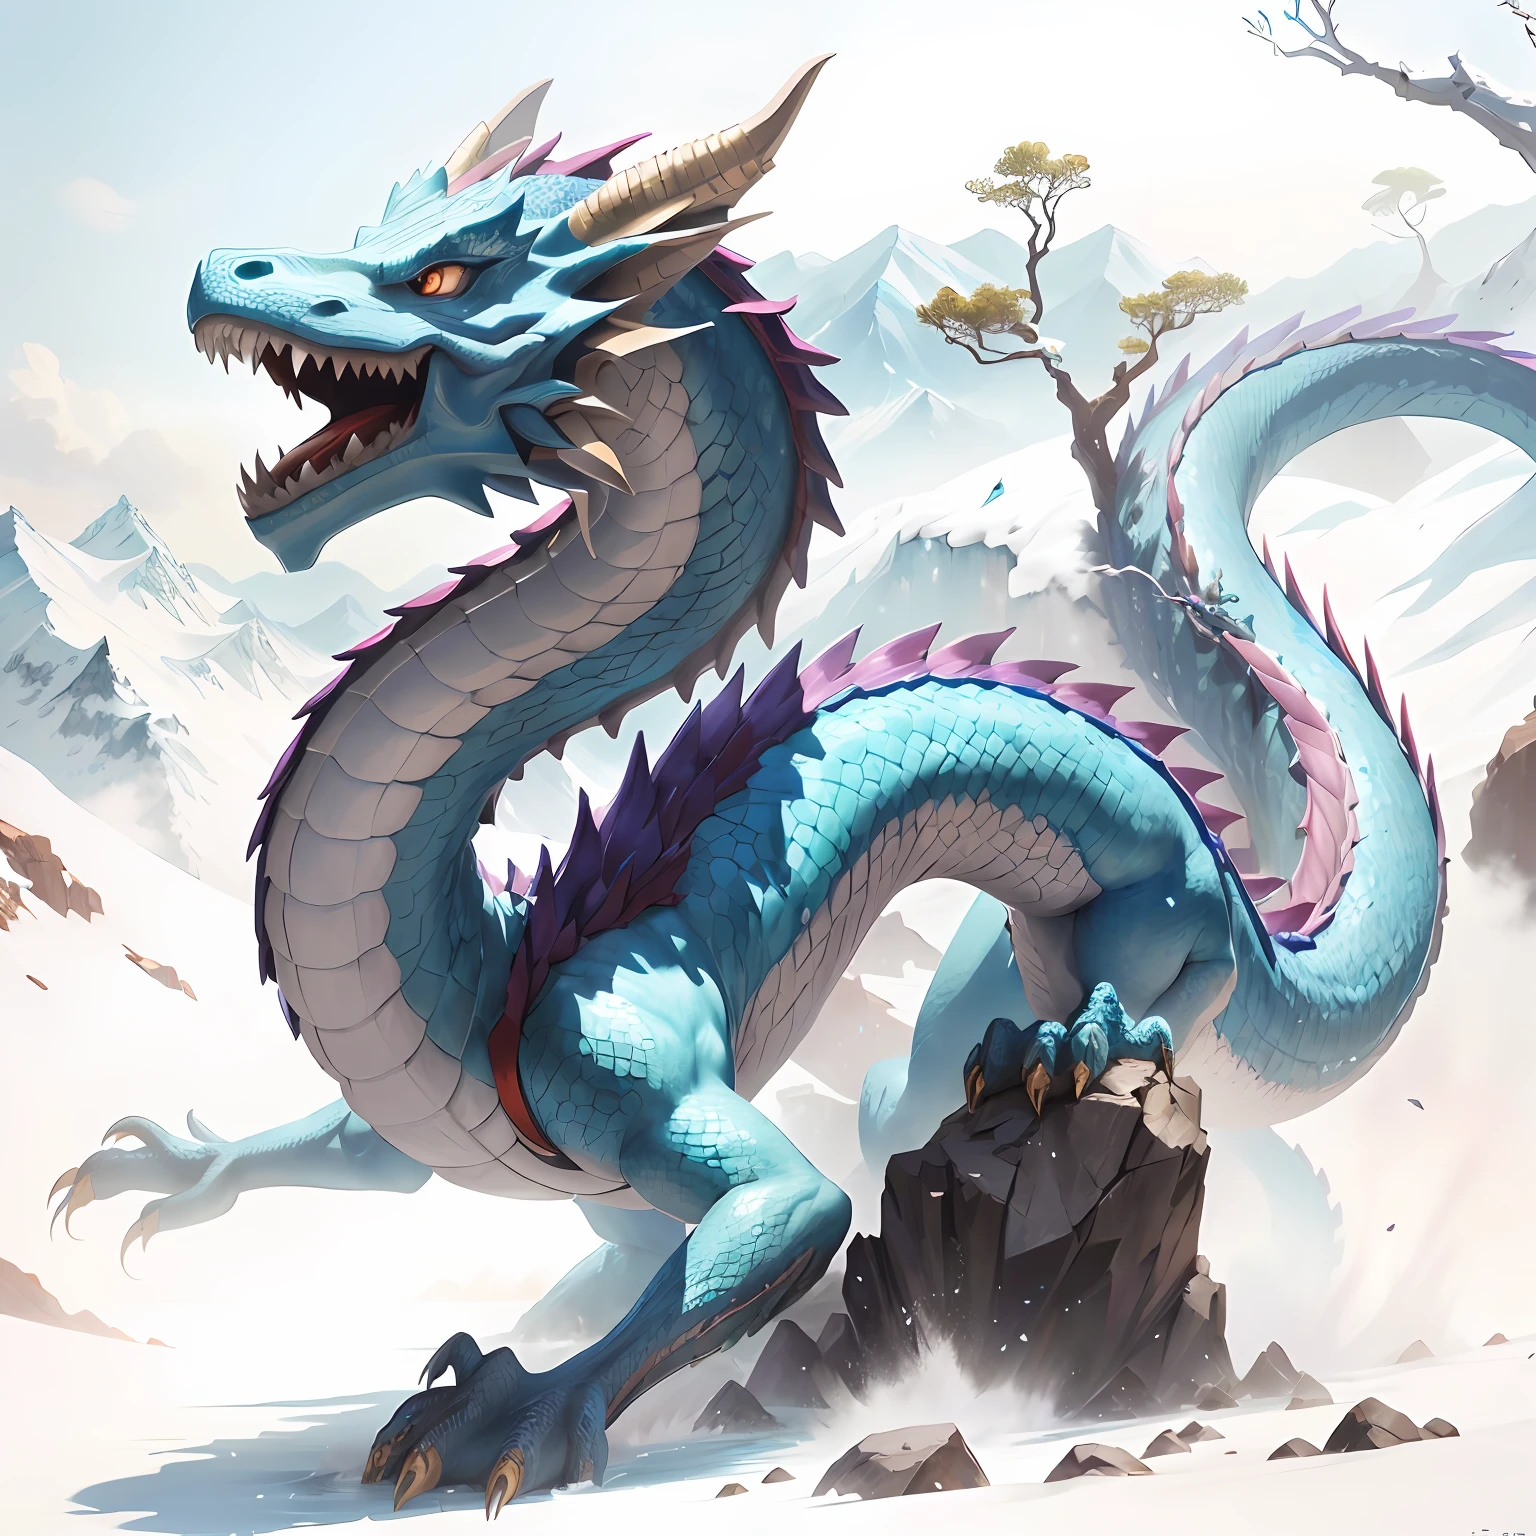 岩の上に青い龍が立っています, シアンの中国のドラゴンファンタジー, ブルードラゴン, Frost dragon, 中国のドラゴンのコンセプトアート, 青い鱗のドラゴン, dragon Art, Legendary dragon, d&d 委託アートドラゴン, 滑らかな中国のドラゴン, dragon, 壮大なドラゴン, ウォータードラゴン, 長いドラゴン, oil painting の dragon, 飲んだ, 雄大な，ドラゴン， カラフル， 山頂， 滝人， 白雲， 傑作， 最高の品質を最高に， 非常に詳細です， 細かく描写された， のfcial art， ユニティ 8k 壁紙， 4K，8k，UHd， 非常に詳細な， bぼやけるry， ぼやけるry_背景， ぼやけるry_前景，深さ_の_分野，モーション_ぼやける，（現実的に，写真のようにリアル：1），黄金のドラゴン，青い鱗， --自動